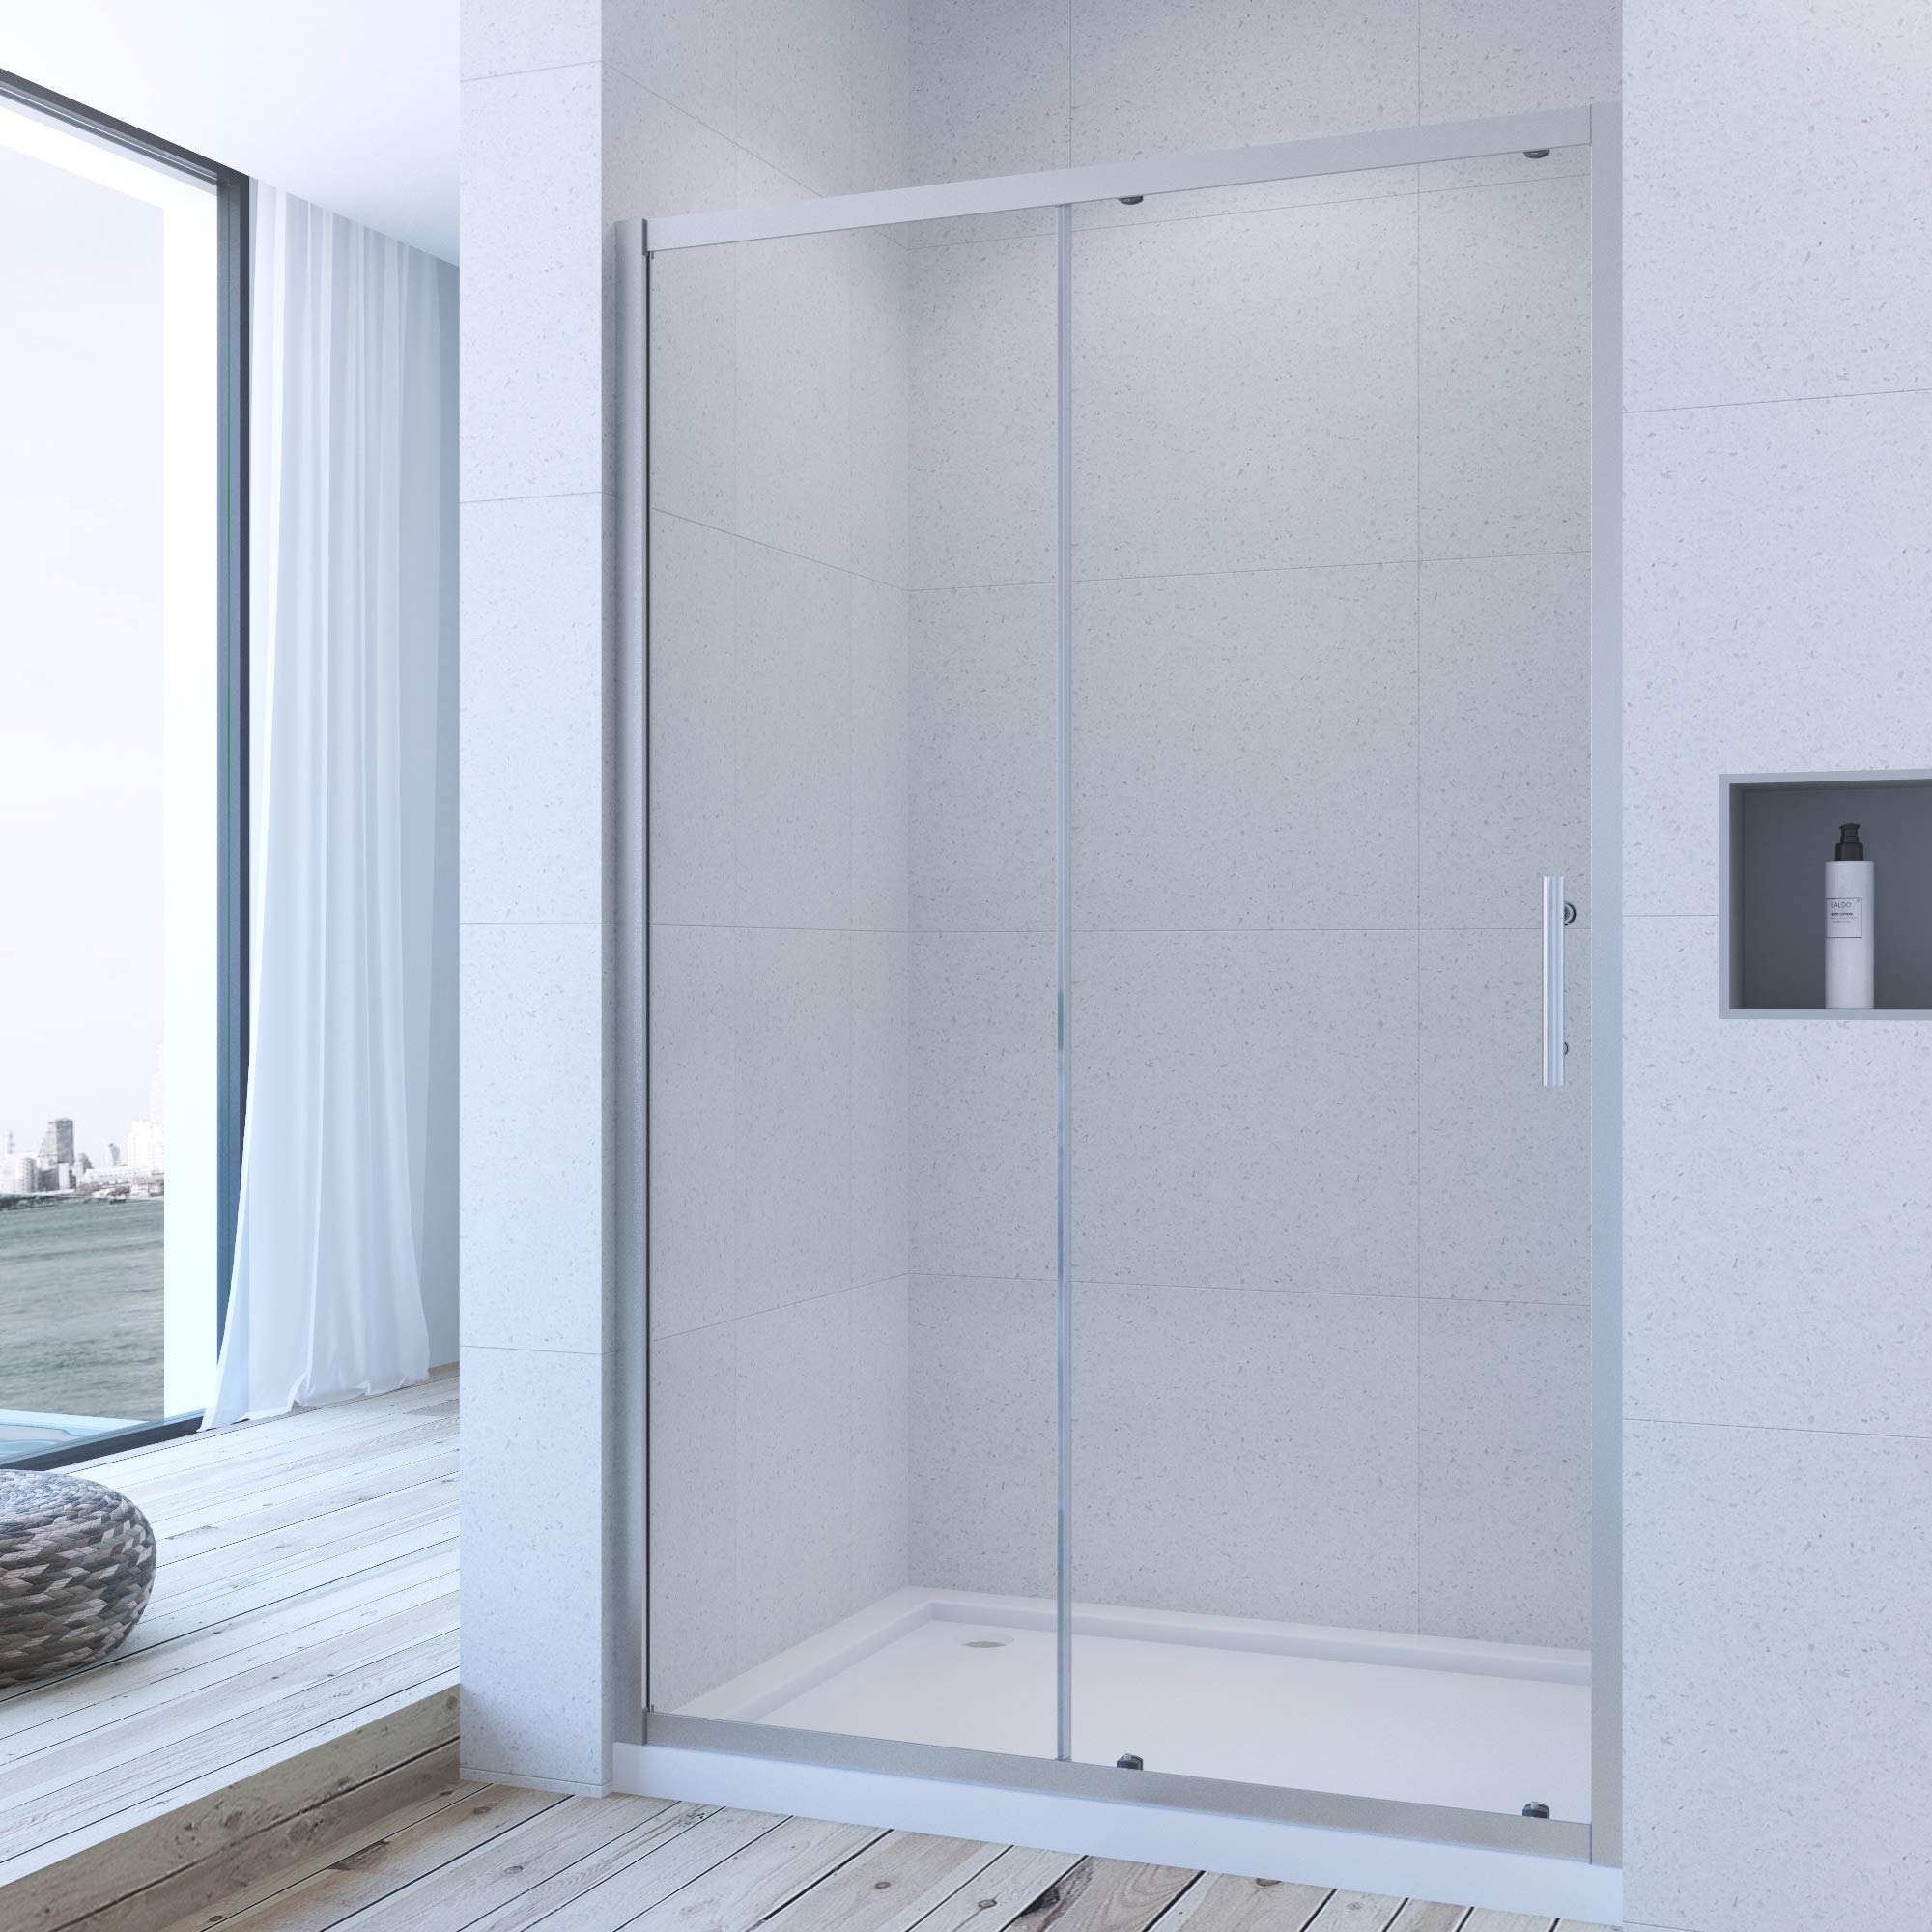 Duschtür Nische 150 cm Schiebetür Dusche Duschschiebetür Nischentür Nischenschiebetür Duschabtrennung Duschwand Glas 185 cm höhe